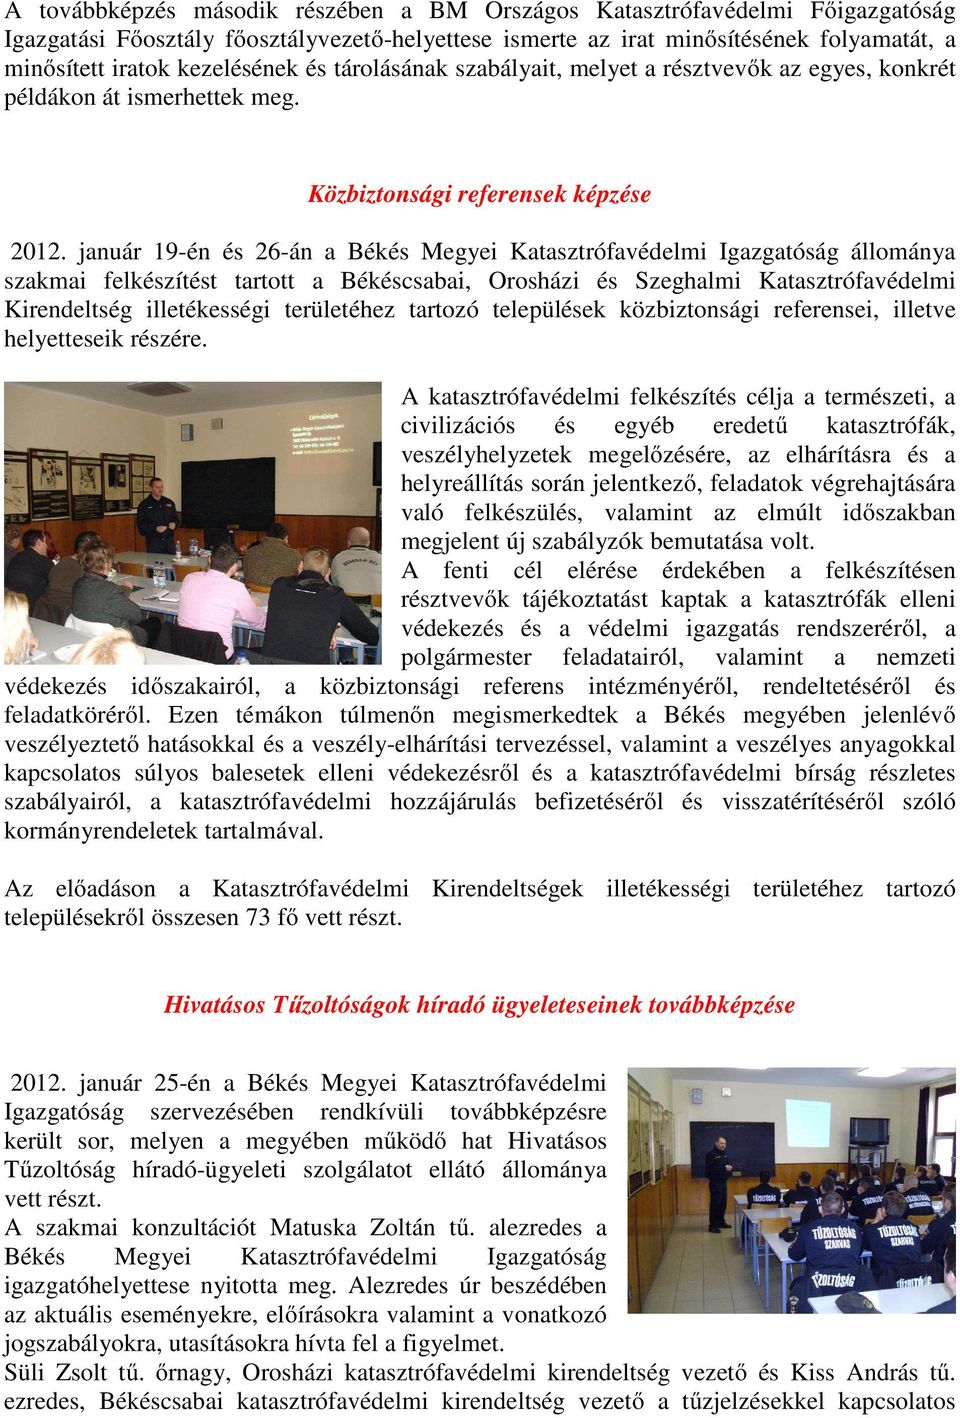 január 19-én és 26-án a Békés Megyei Katasztrófavédelmi Igazgatóság állománya szakmai felkészítést tartott a Békéscsabai, Orosházi és Szeghalmi Katasztrófavédelmi Kirendeltség illetékességi